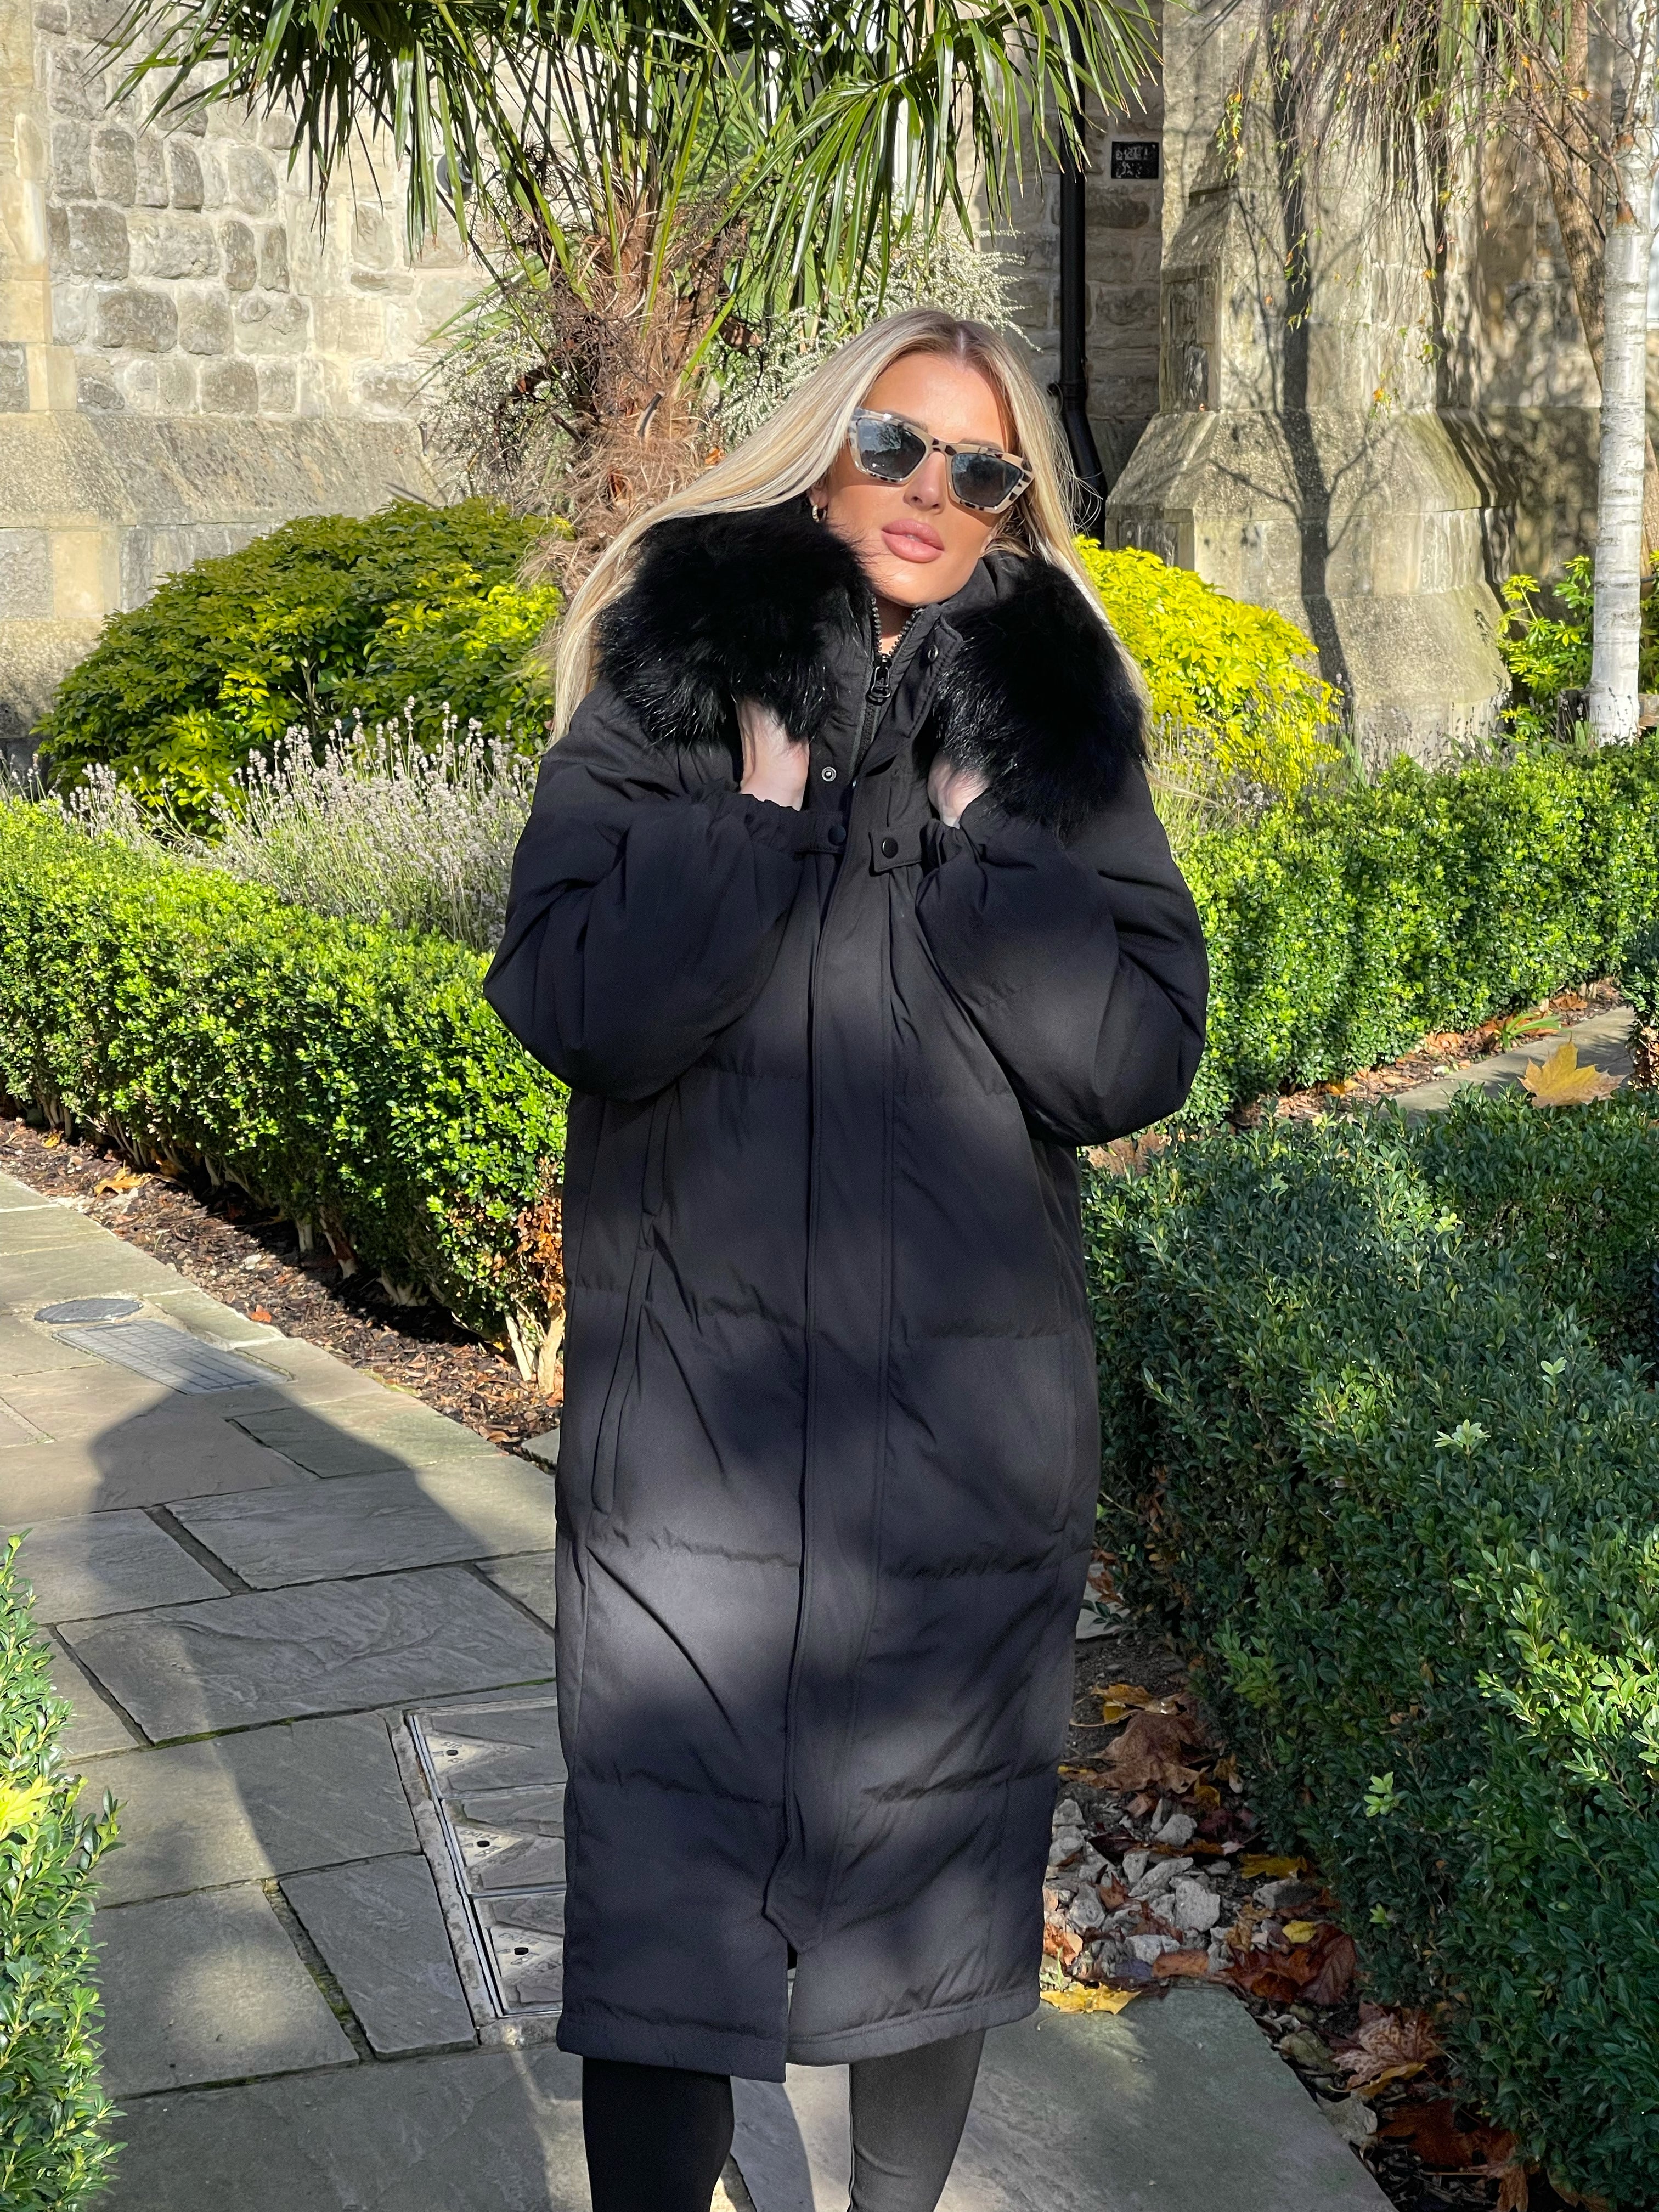 Kylie black coat - Black fur